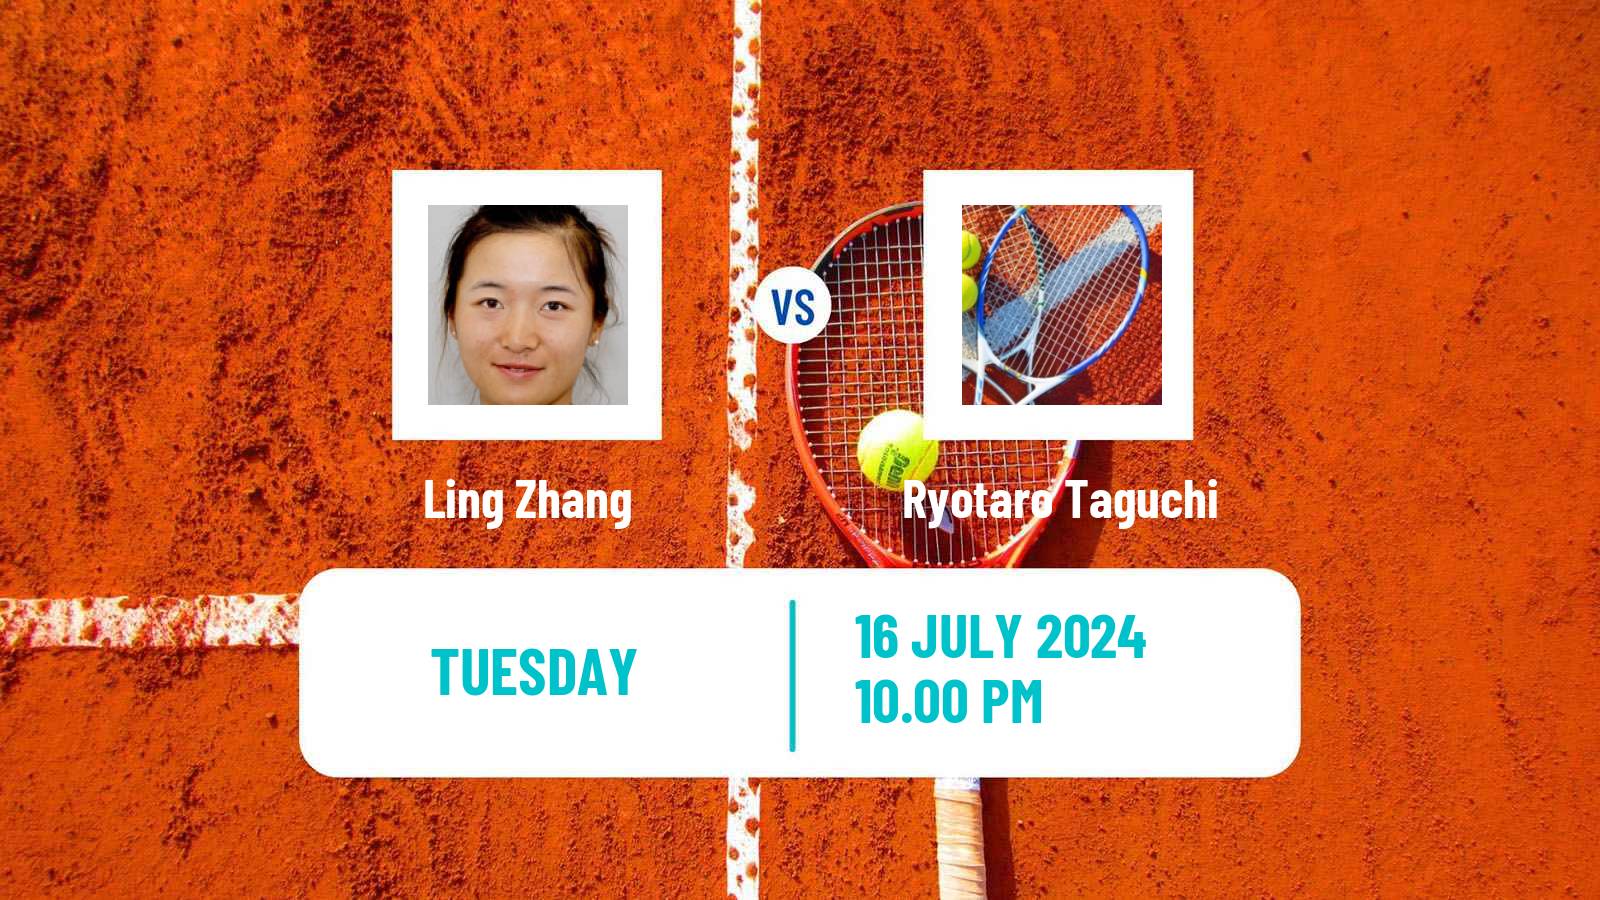 Tennis ITF M25 Tianjin 2 Men Ling Zhang - Ryotaro Taguchi